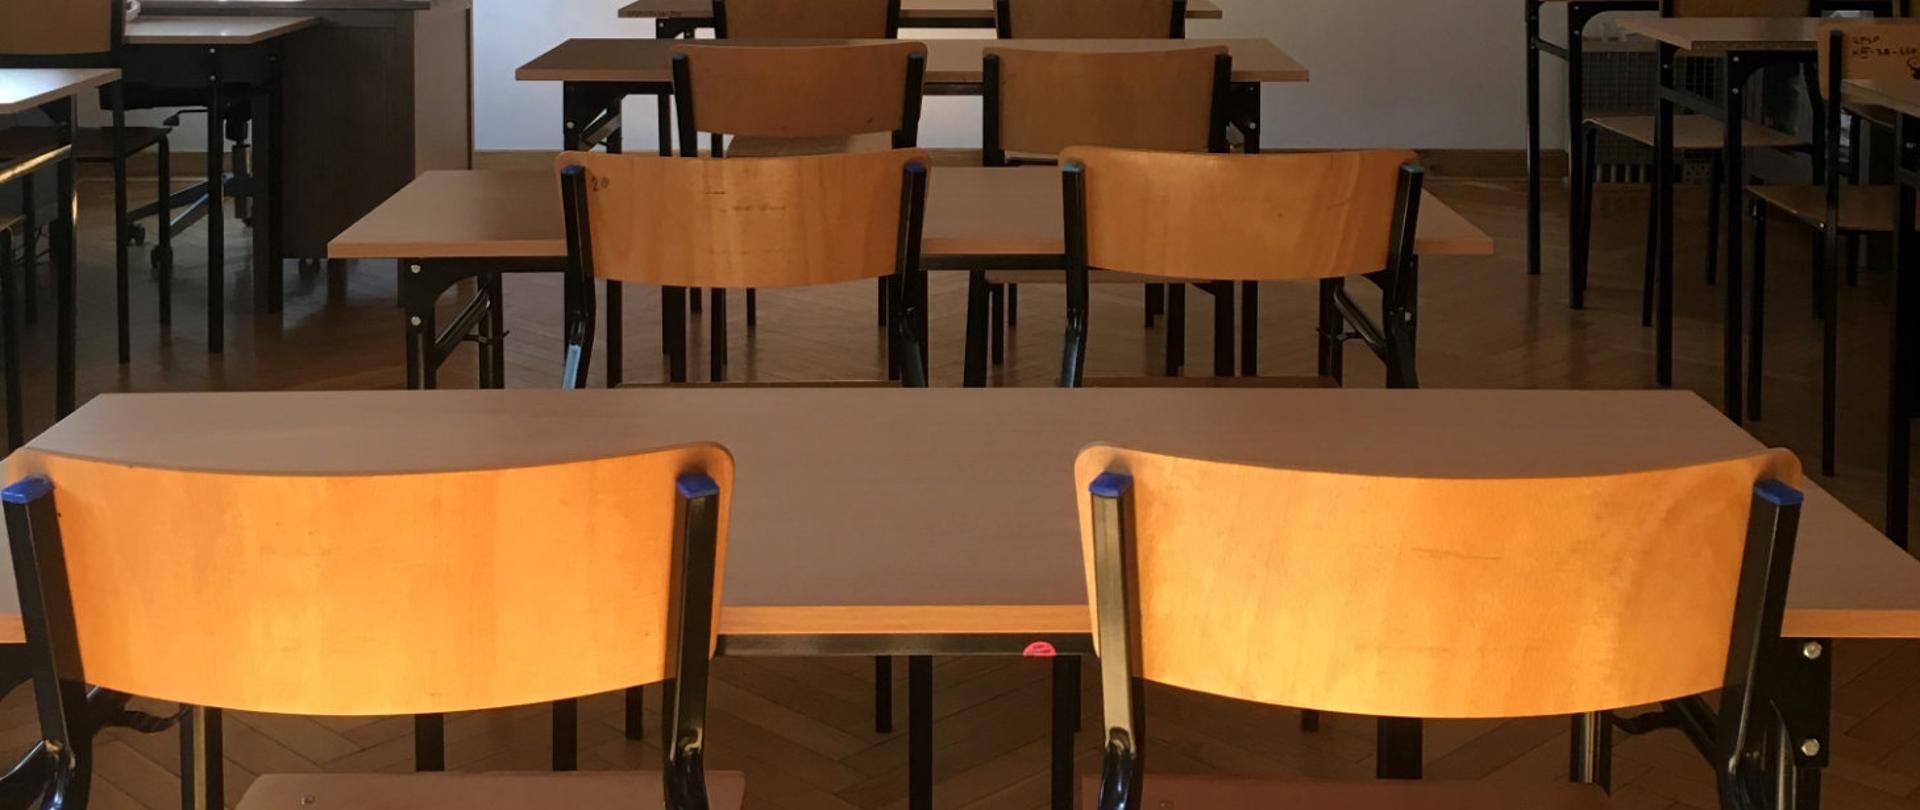 Pusta sala lekcyjna widziana z tylnej części, kadr obejmuje ławki szkolne.